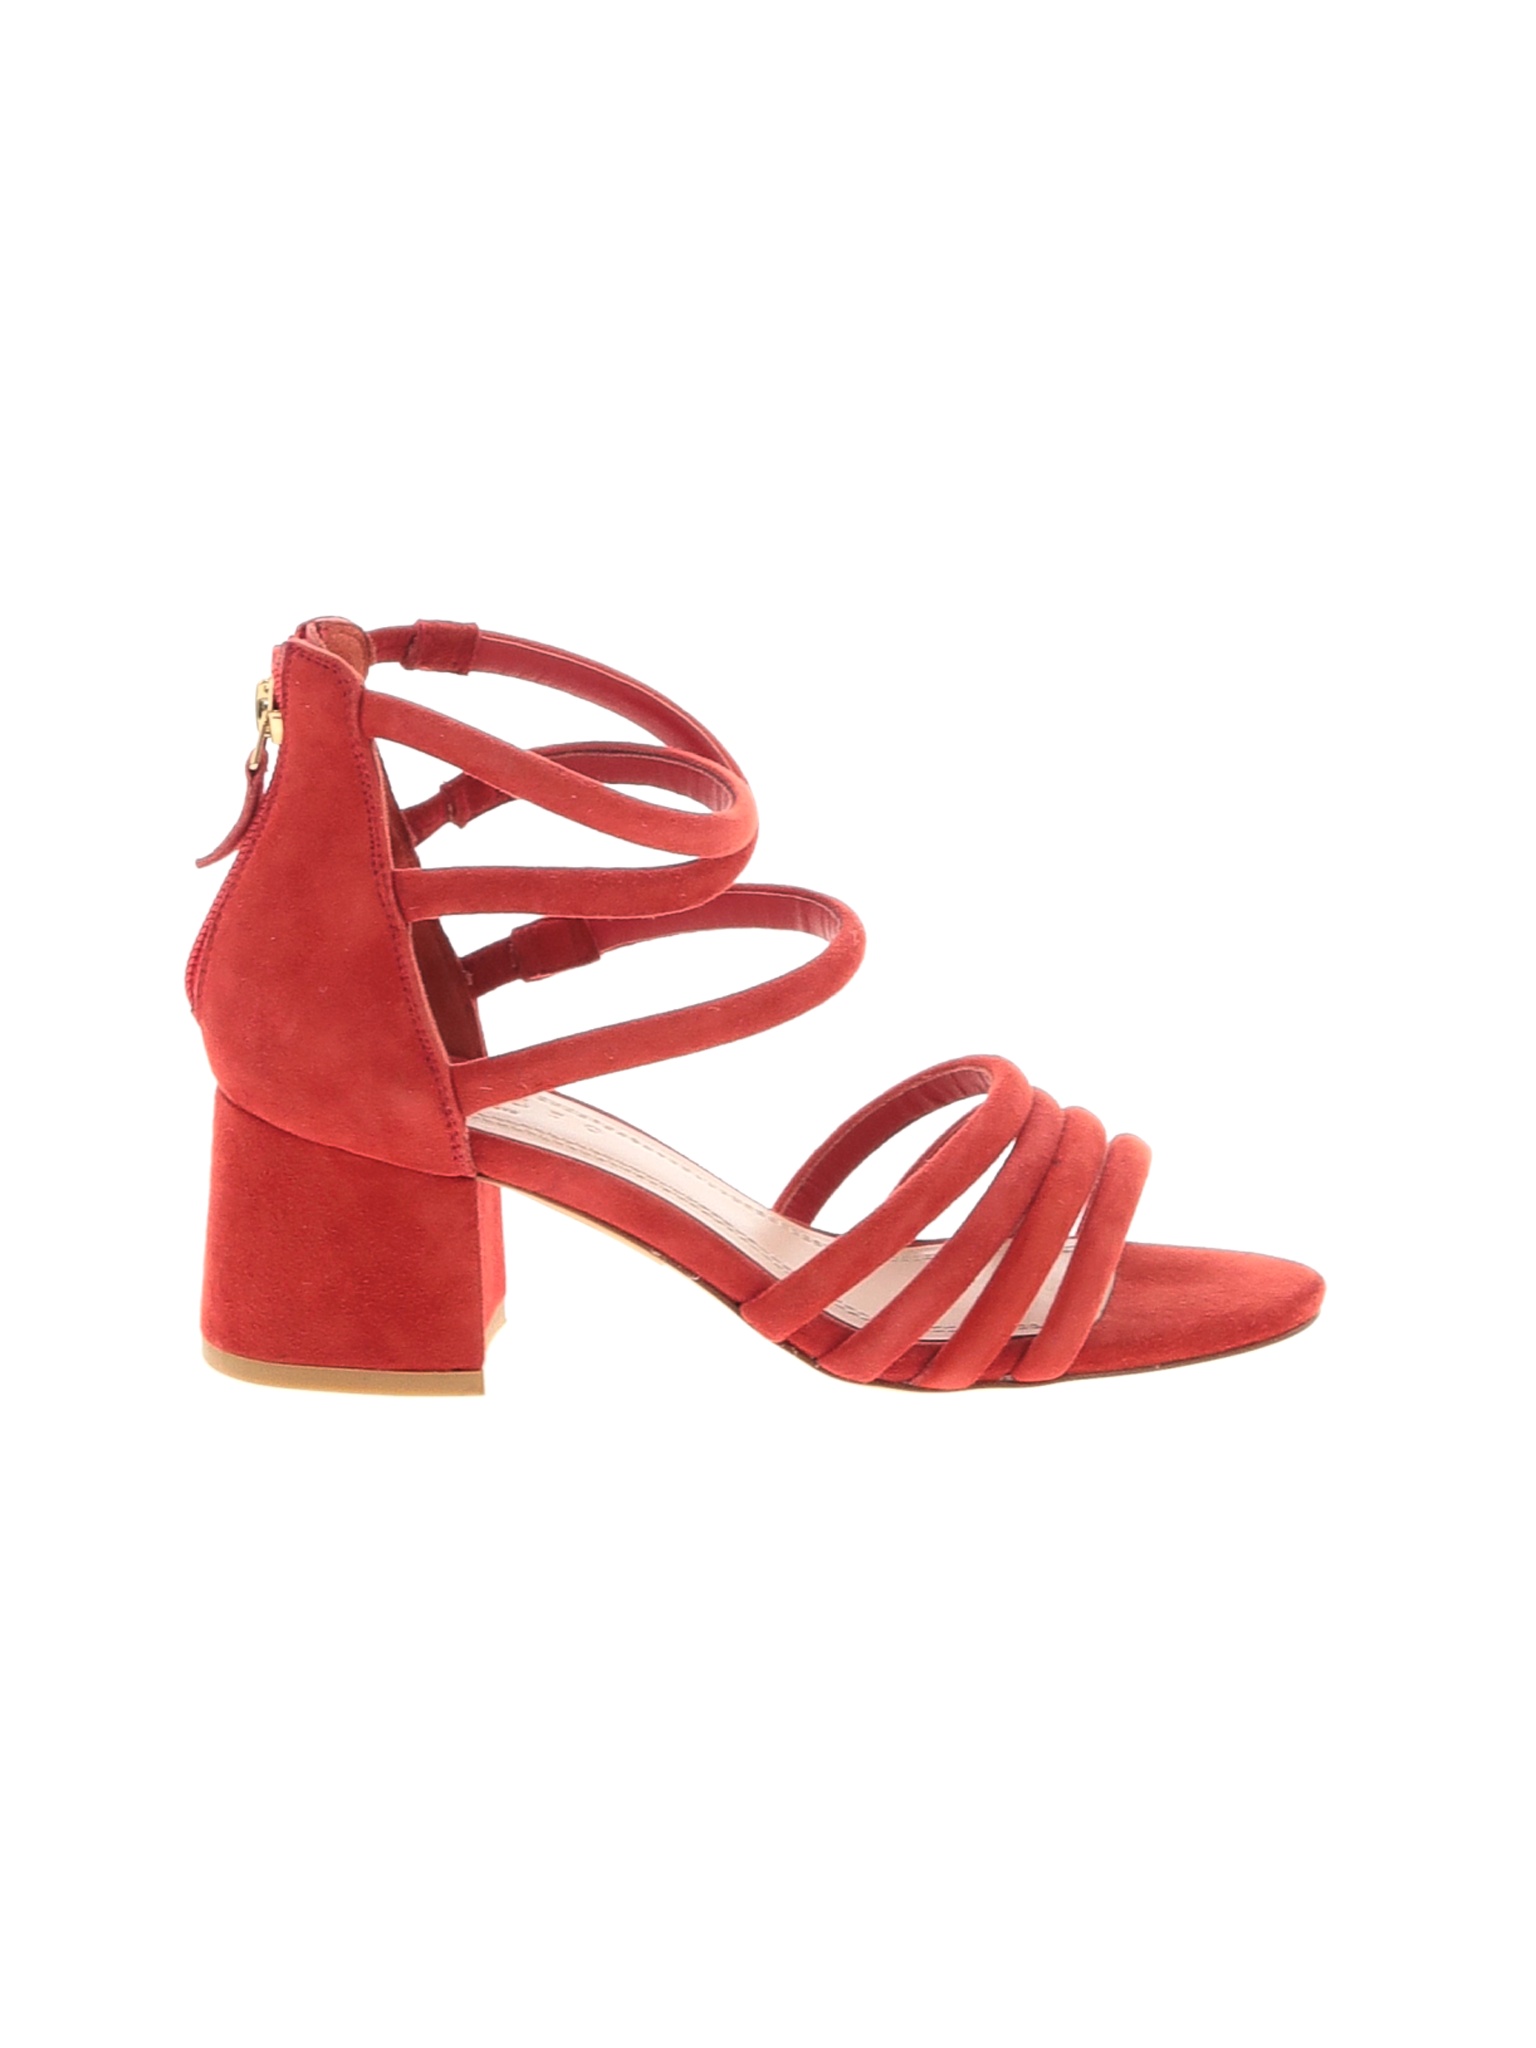 Sandro Women Red Heels EUR 36 | eBay